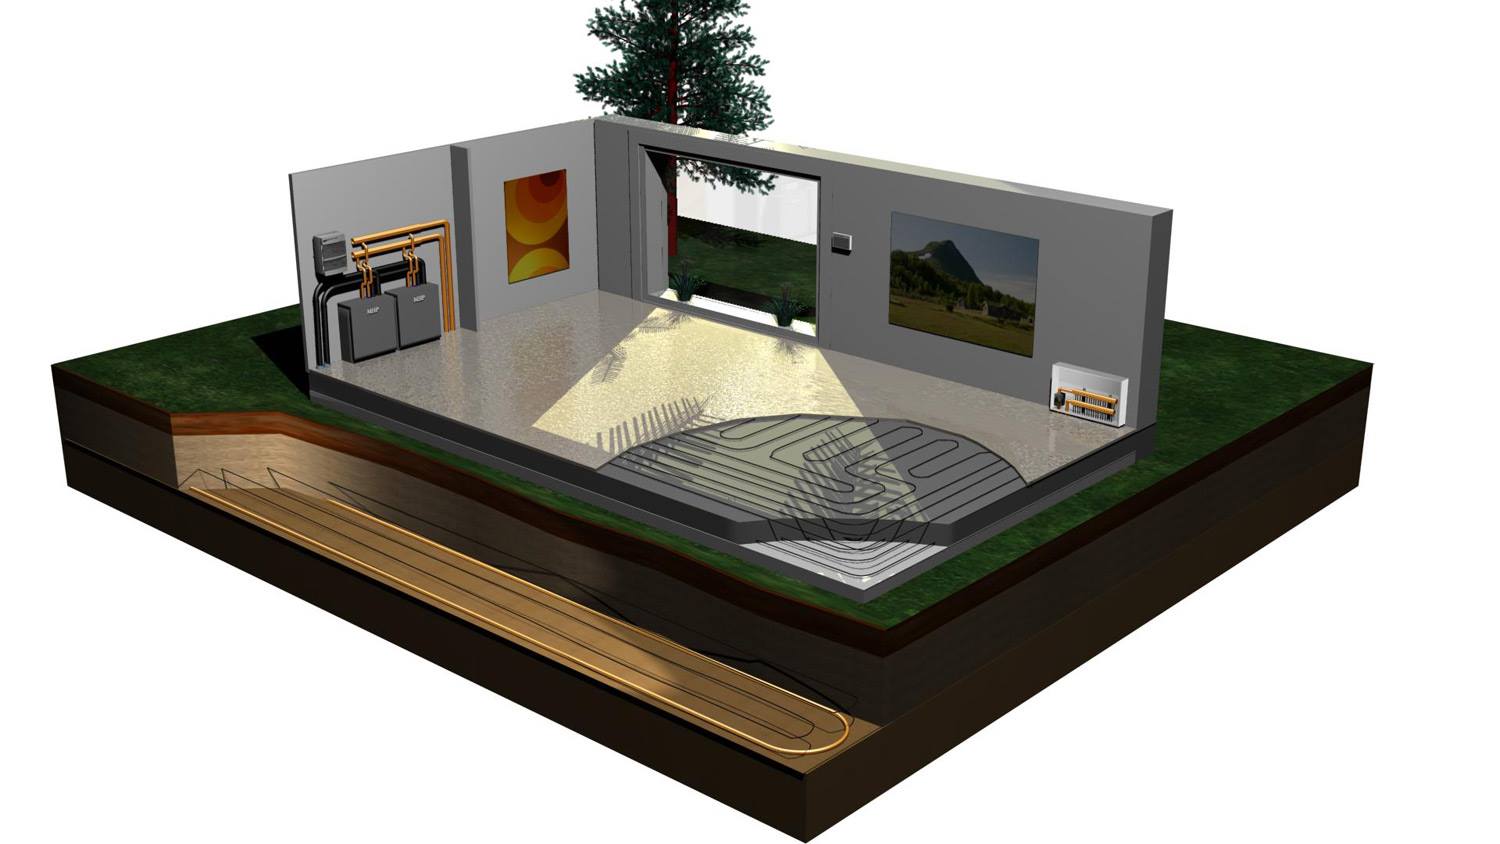 Podlahové topení, podlahový systém Heat-Up pro redistribuci tepla v objektu - řešení vytápění co nenaruší výšku podlahy